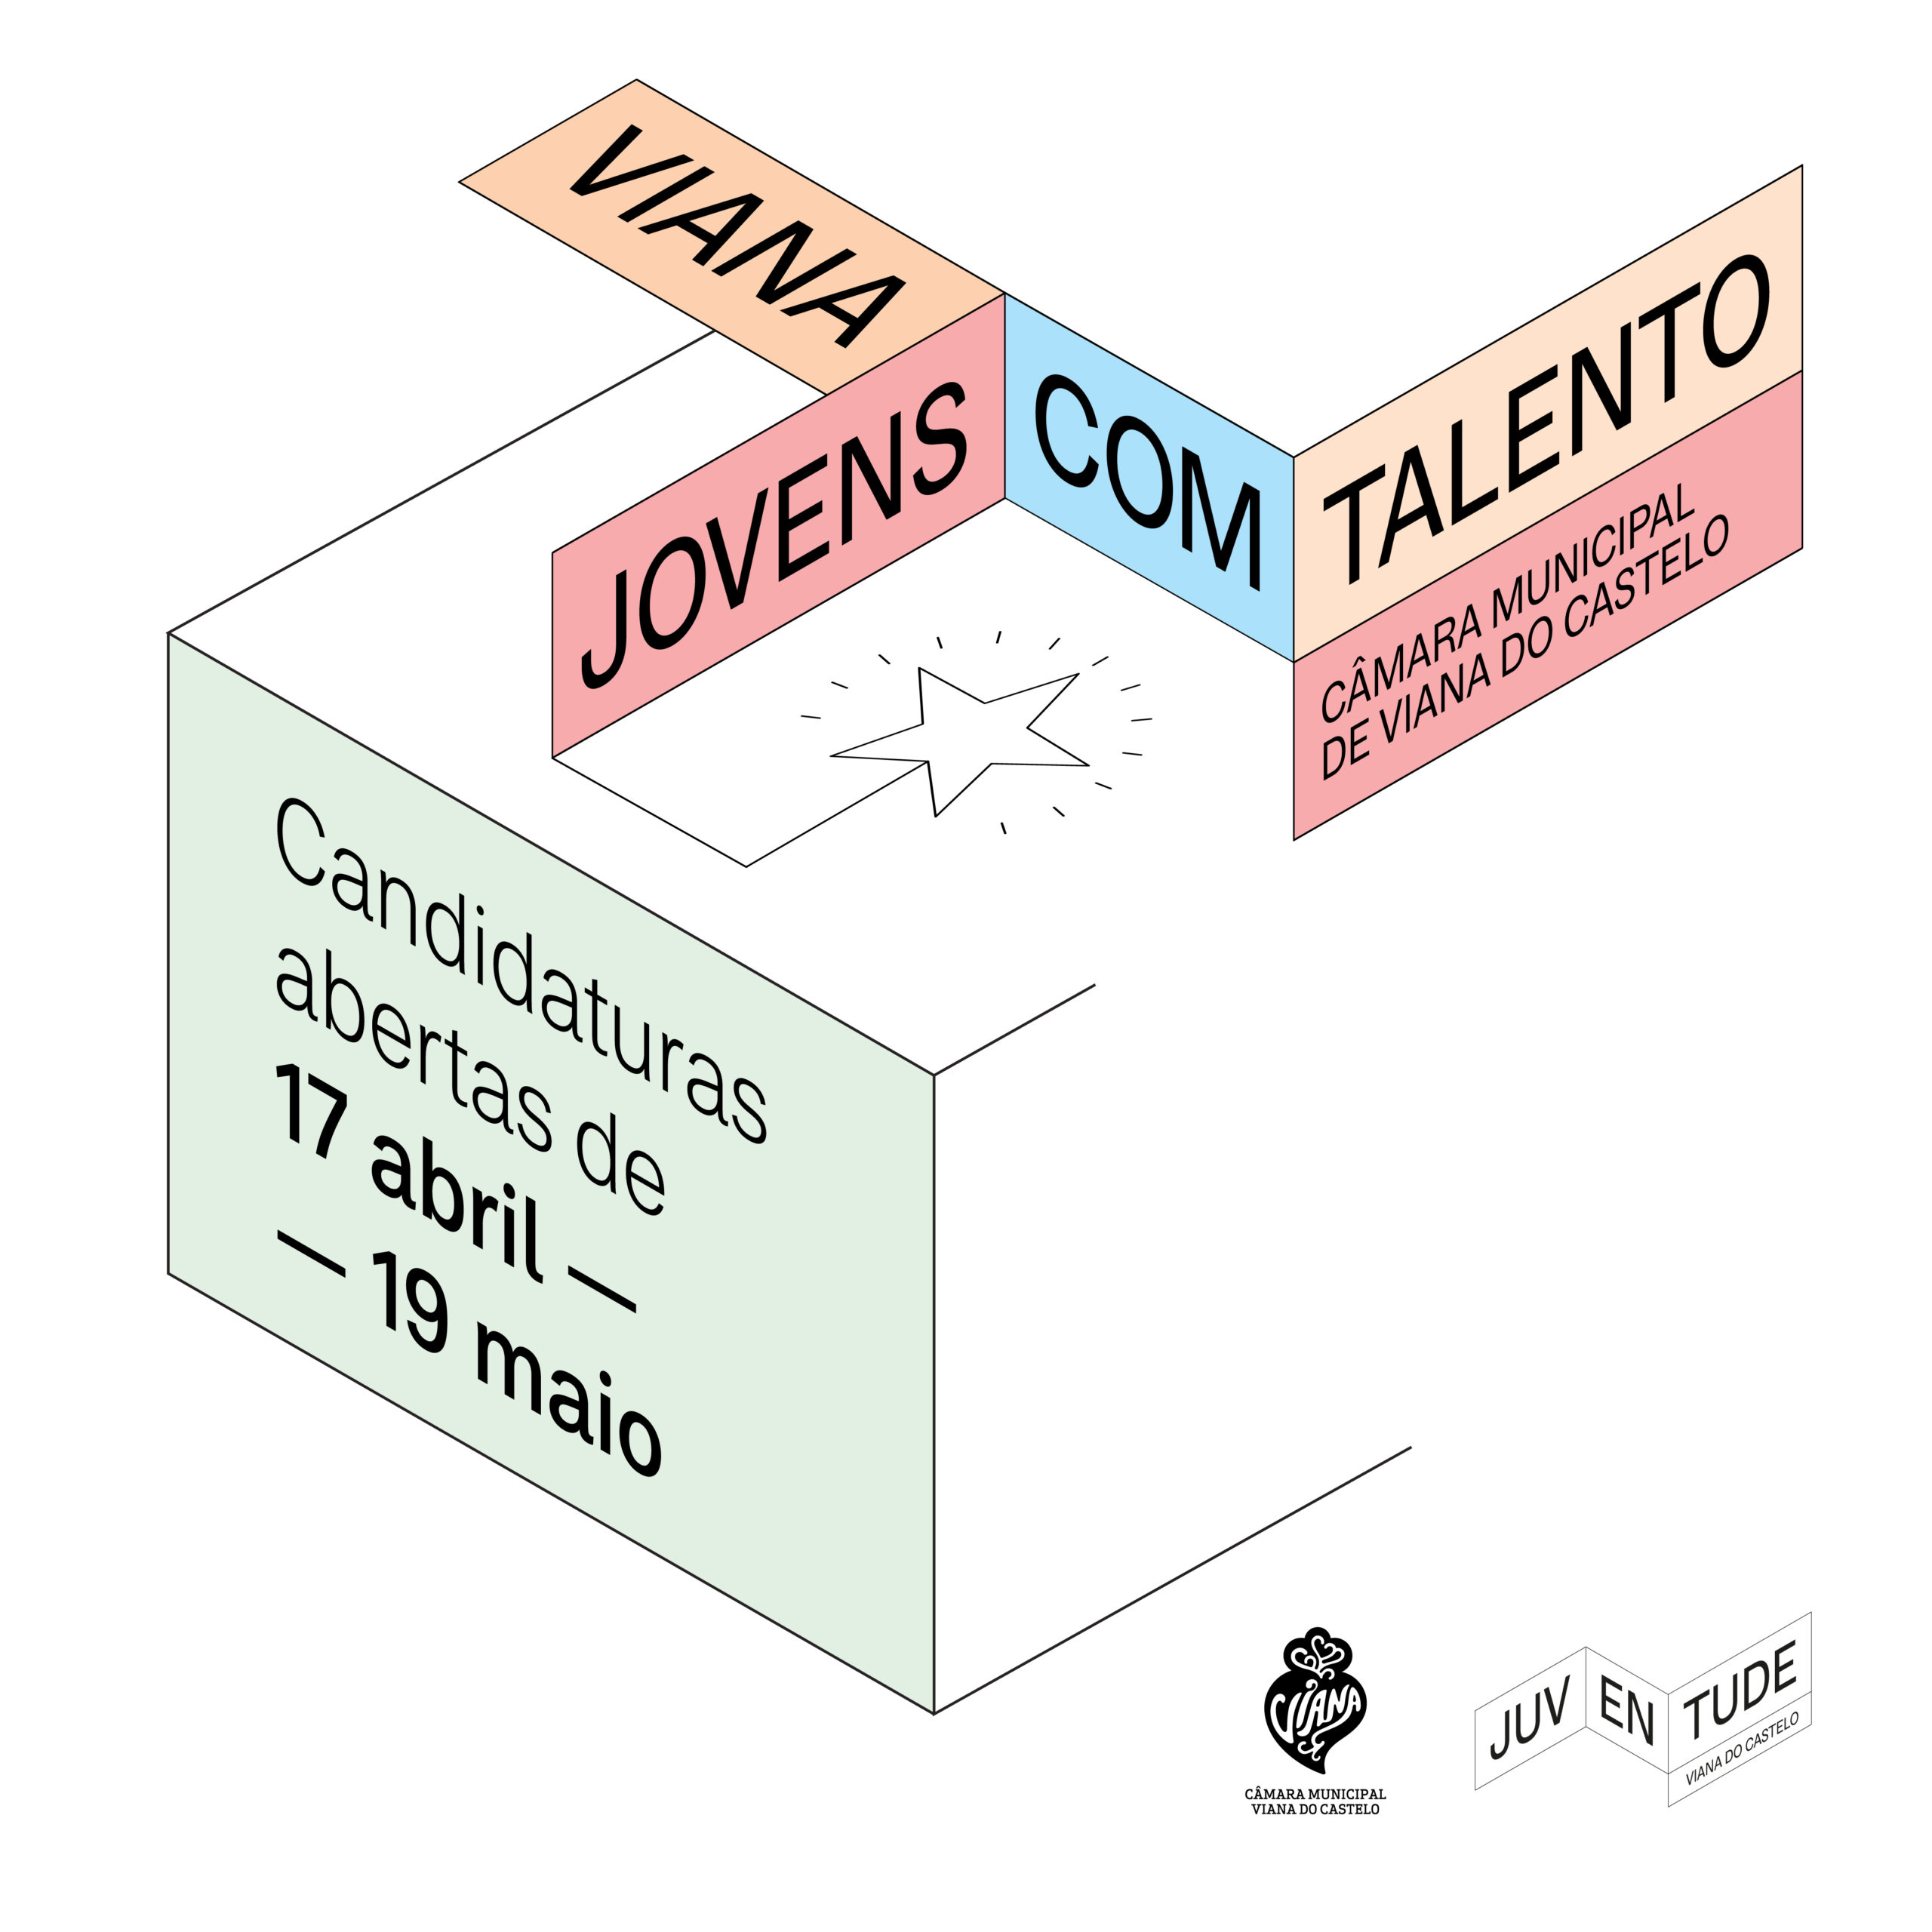 Viana do Castelo dá 50.000 euros a Jovens com Talento